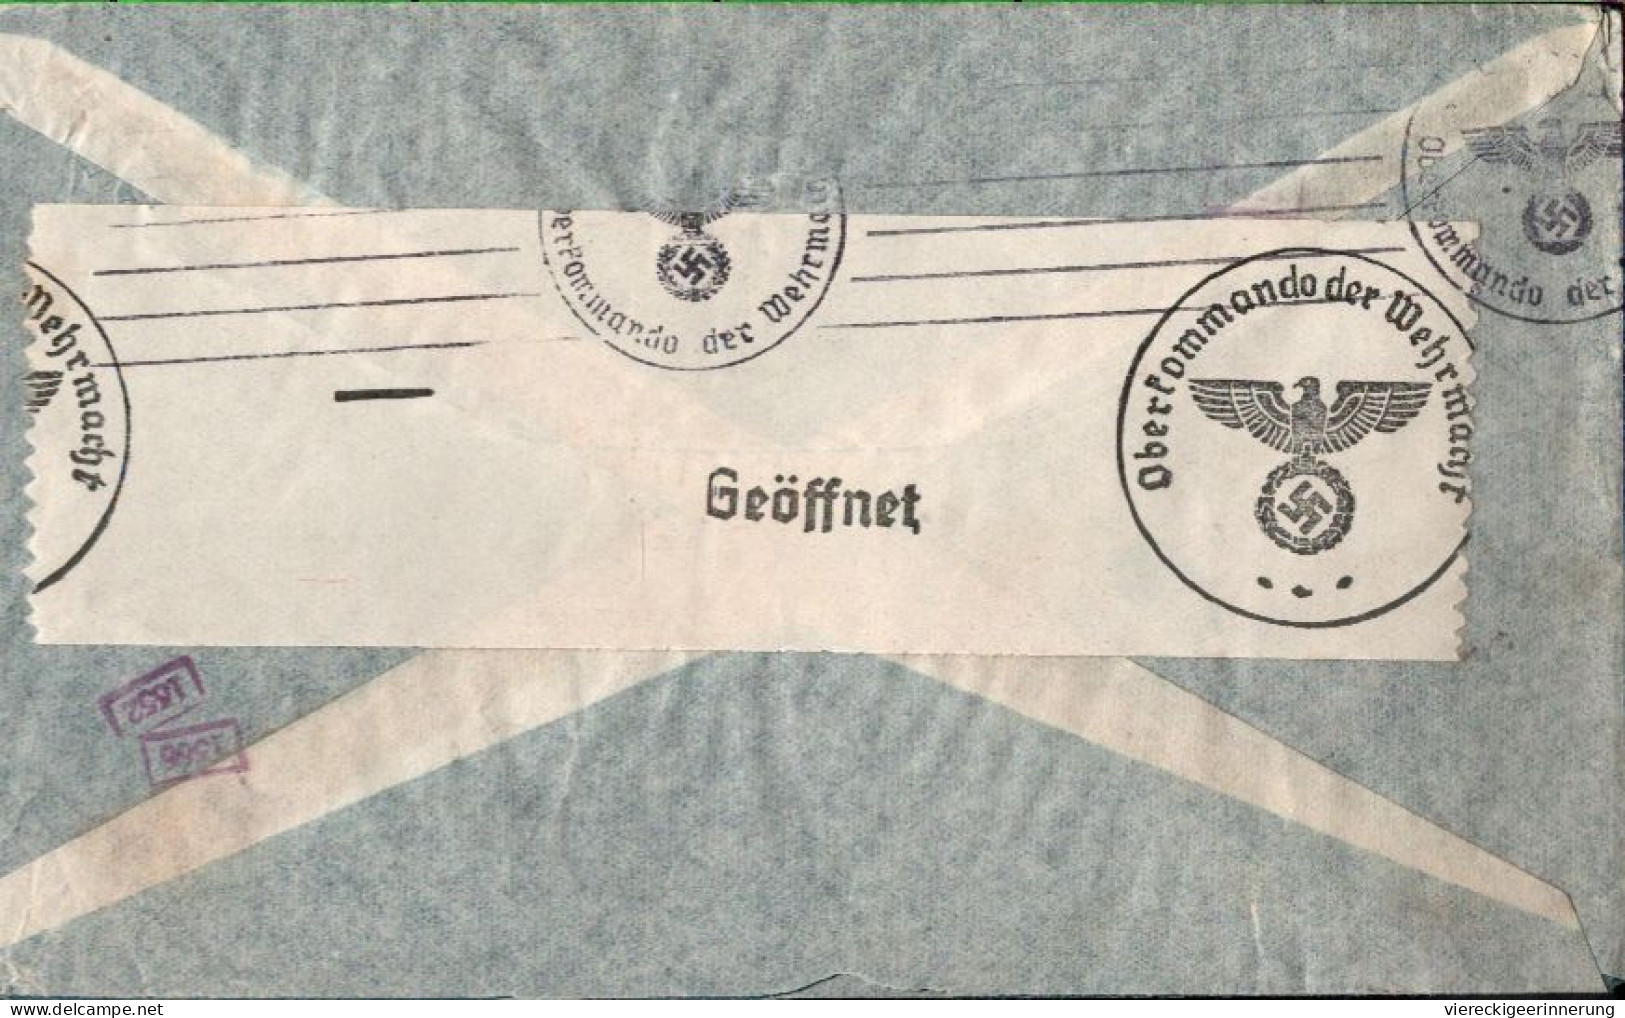 ! Argentinien 1940 Luftpost Brief Aus Buenos Aires Nach Berlin Mit OKW Zensur, Censor Mark, Airmail Via Condor - Covers & Documents